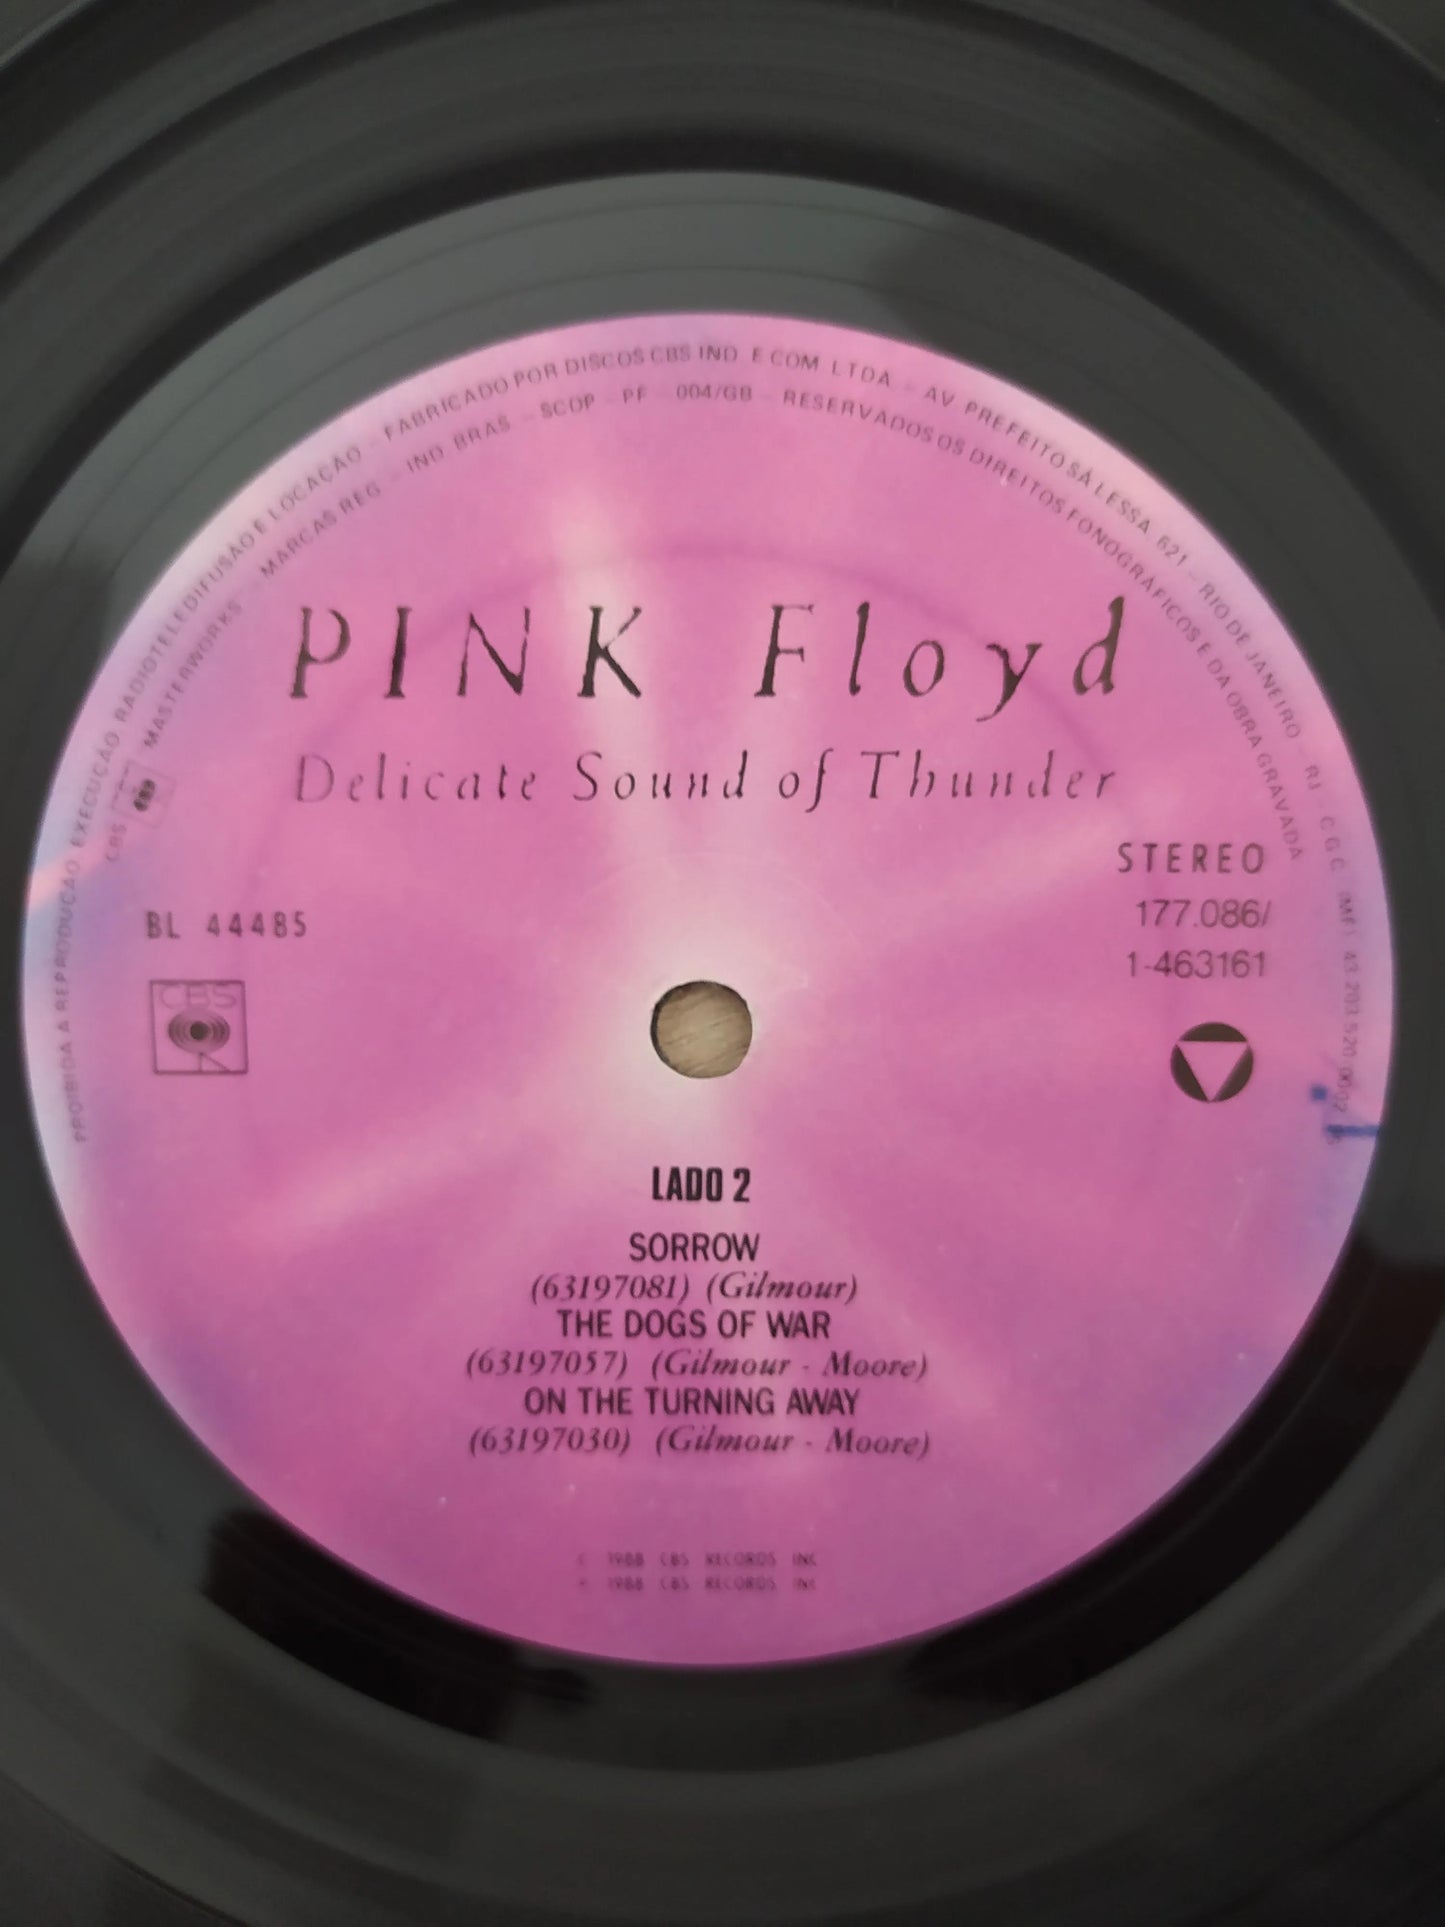 Lp Vinil Pink Floyd Delicate Sound Thunder Duplo C Encartes